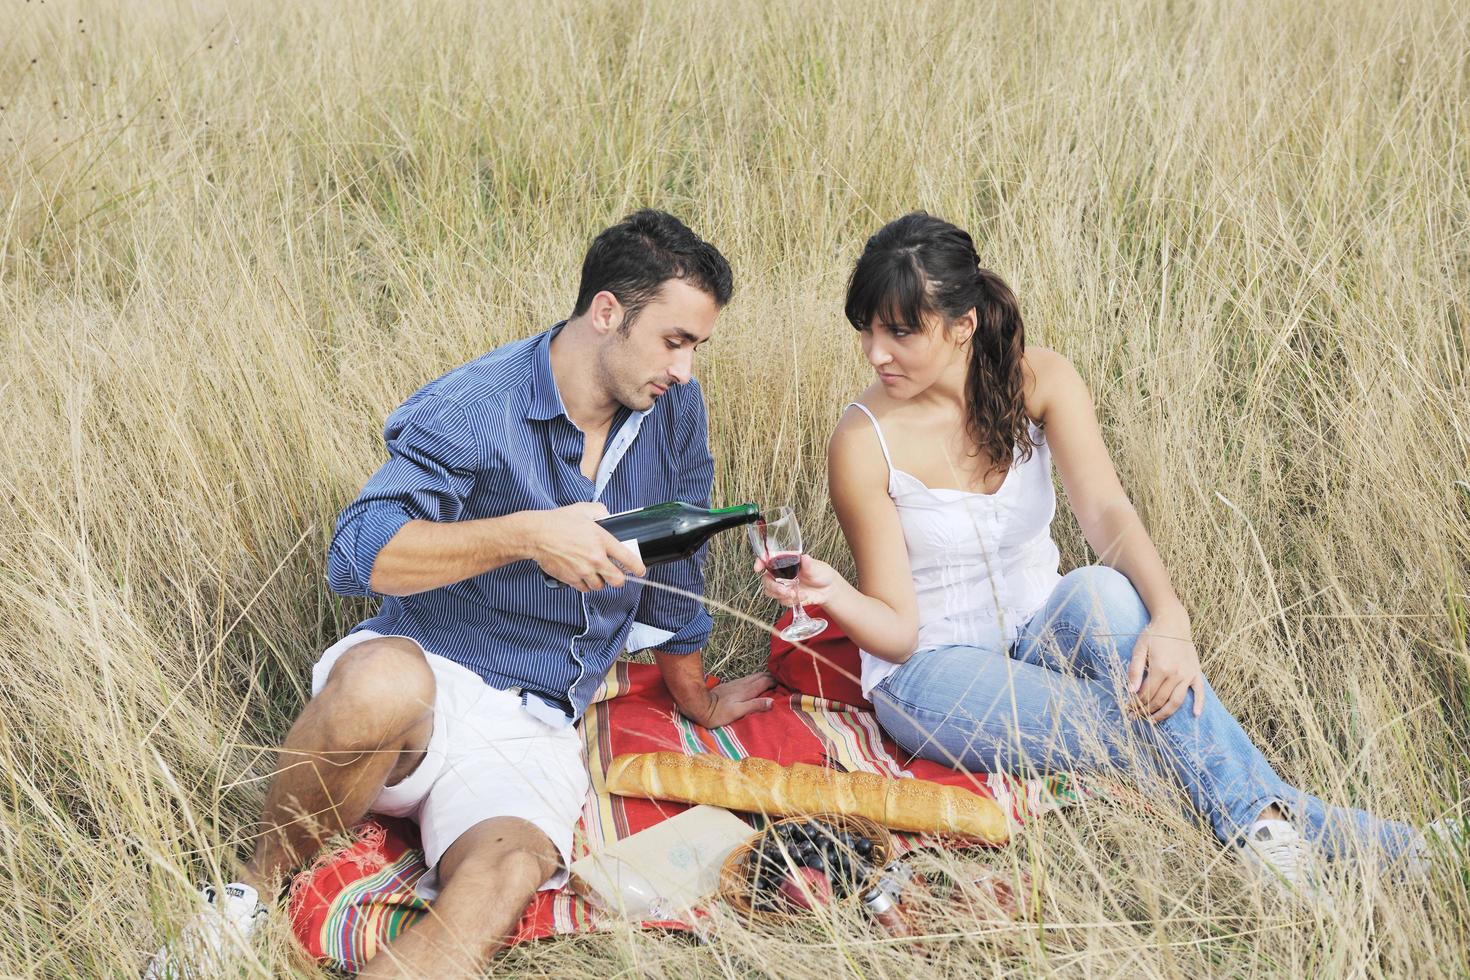 contento coppia godendo campagna picnic nel lungo erba foto